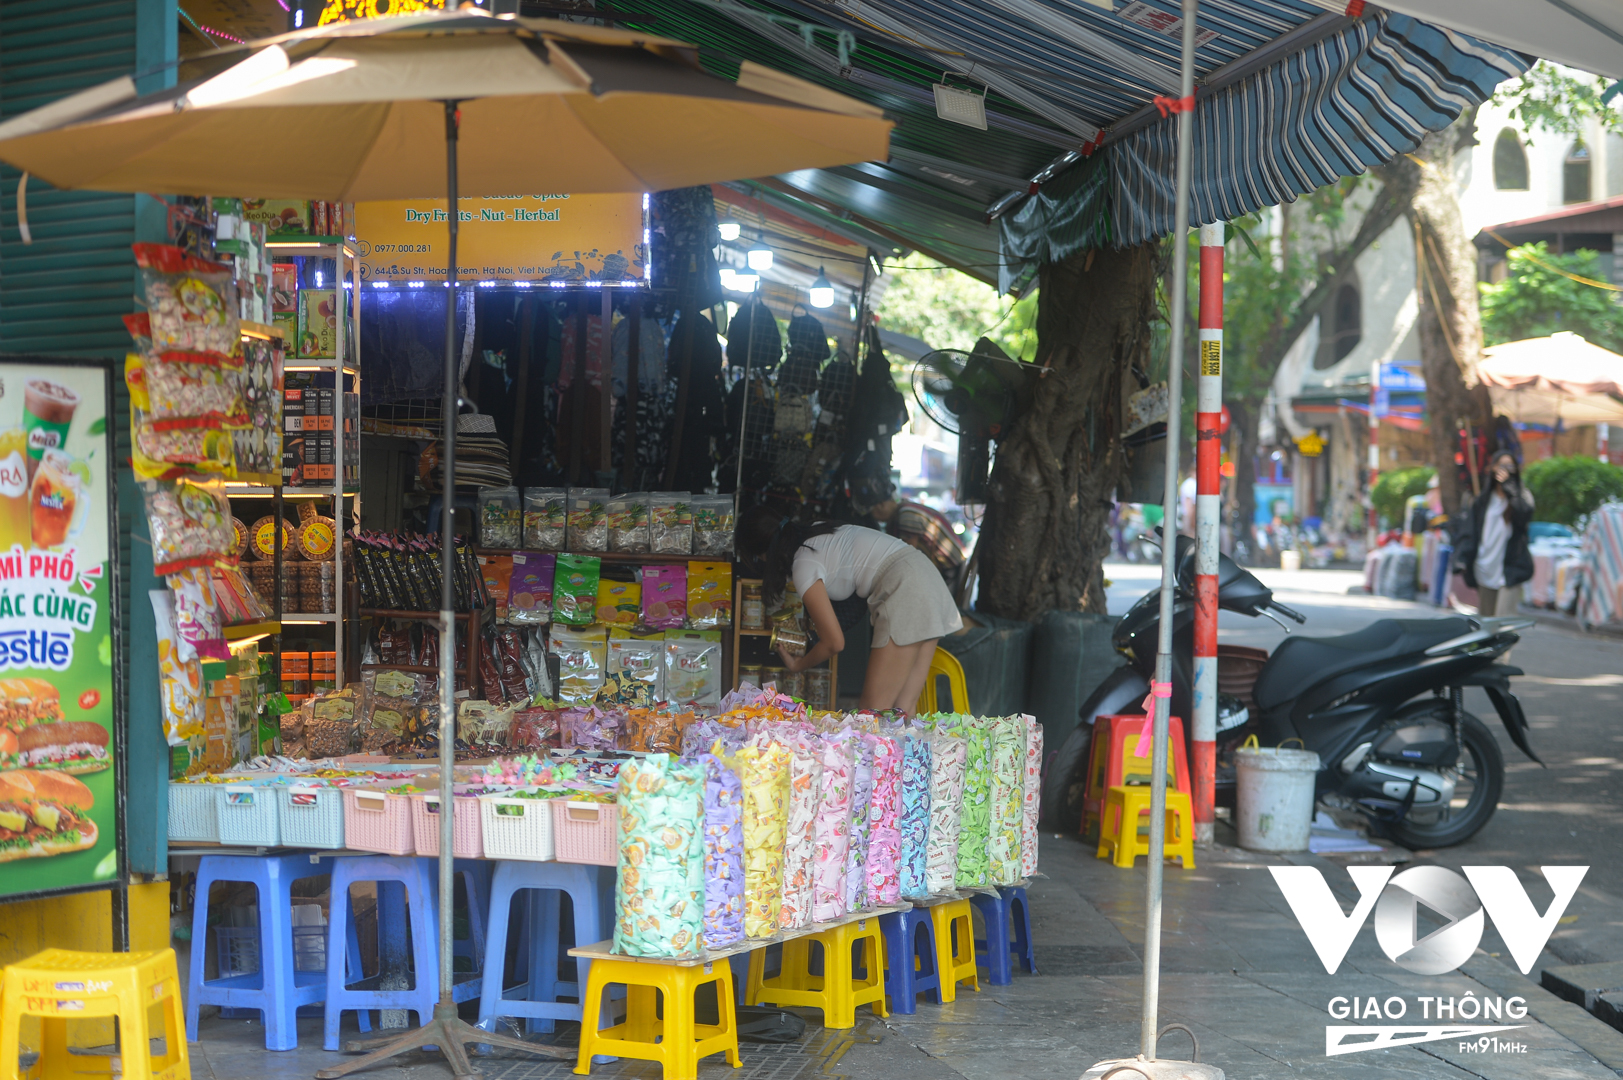 Phần làn dành cho người khuyết tật trên vỉa hè đã bị một số hộ kinh doanh trên phố Hàng Dầu chiếm dụng kê hàng hóa.